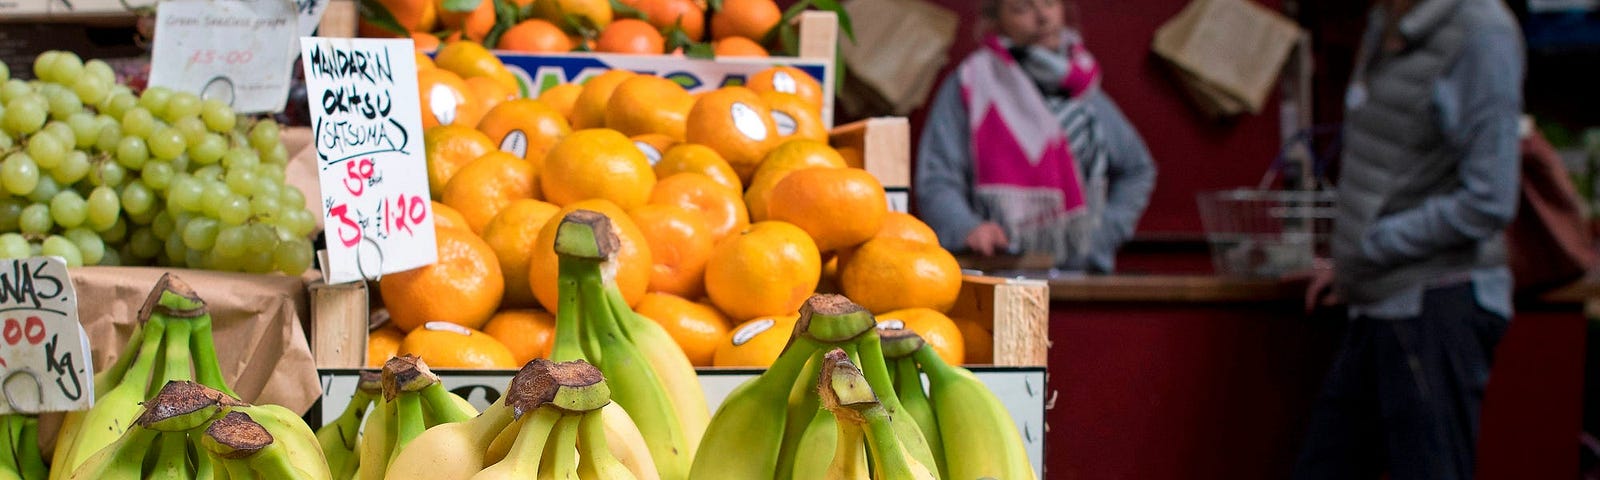 Bananas at a market.